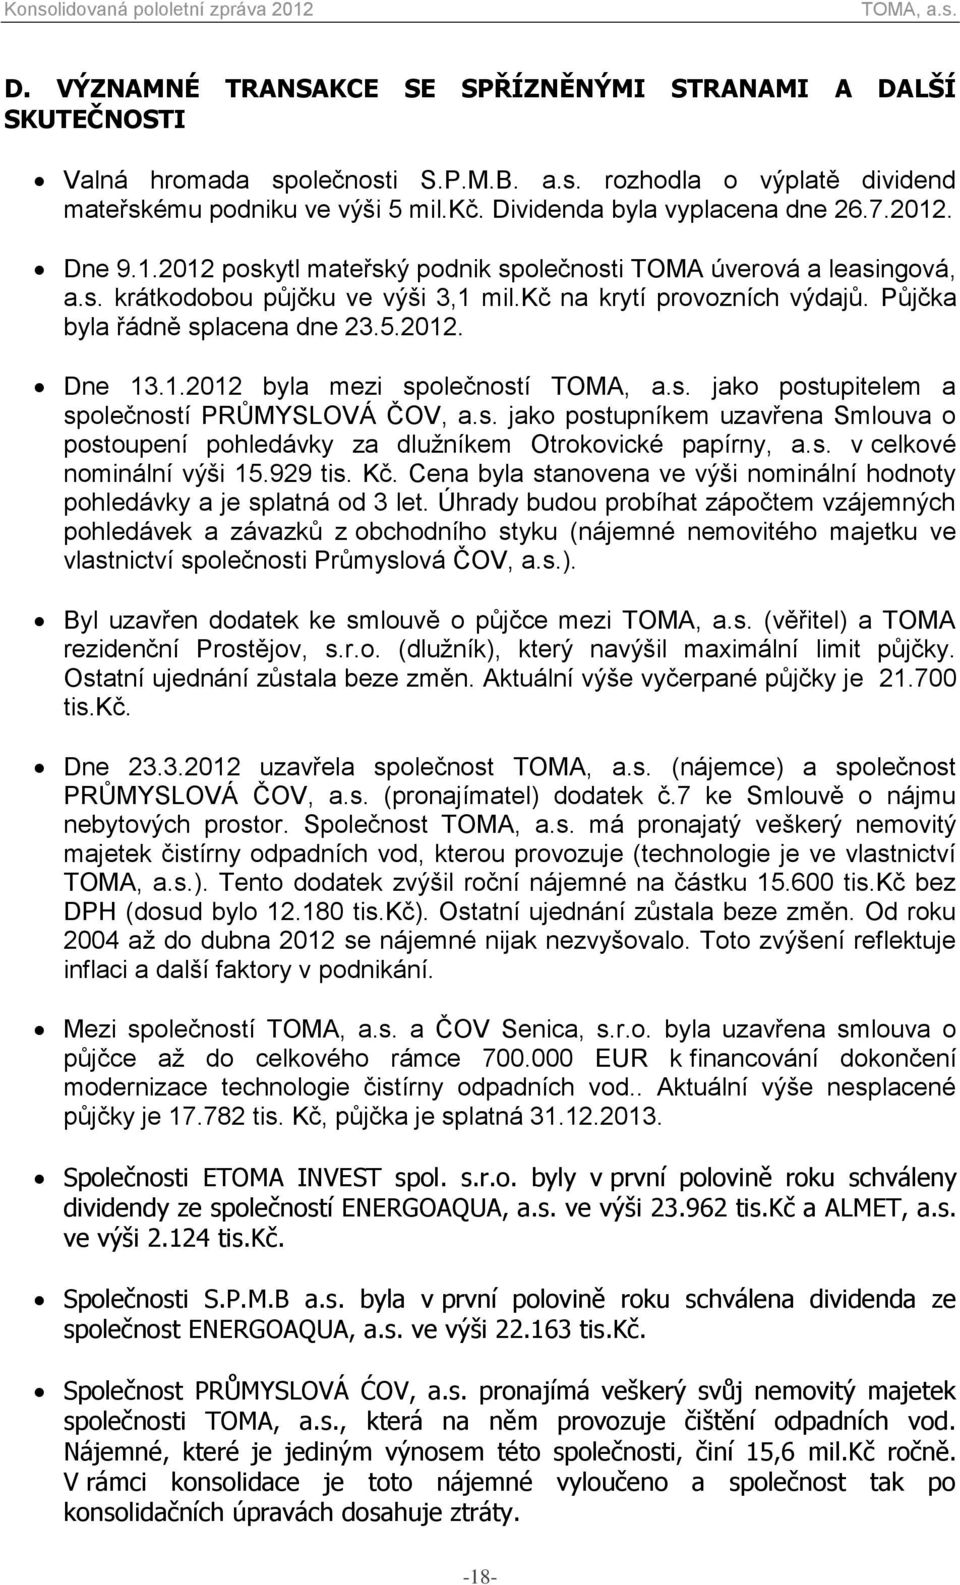 Půjčka byla řádně splacena dne 23.5.2012. Dne 13.1.2012 byla mezi společností jako postupitelem a společností PRŮMYSLOVÁ ČOV, a.s. jako postupníkem uzavřena Smlouva o postoupení pohledávky za dlužníkem Otrokovické papírny, a.